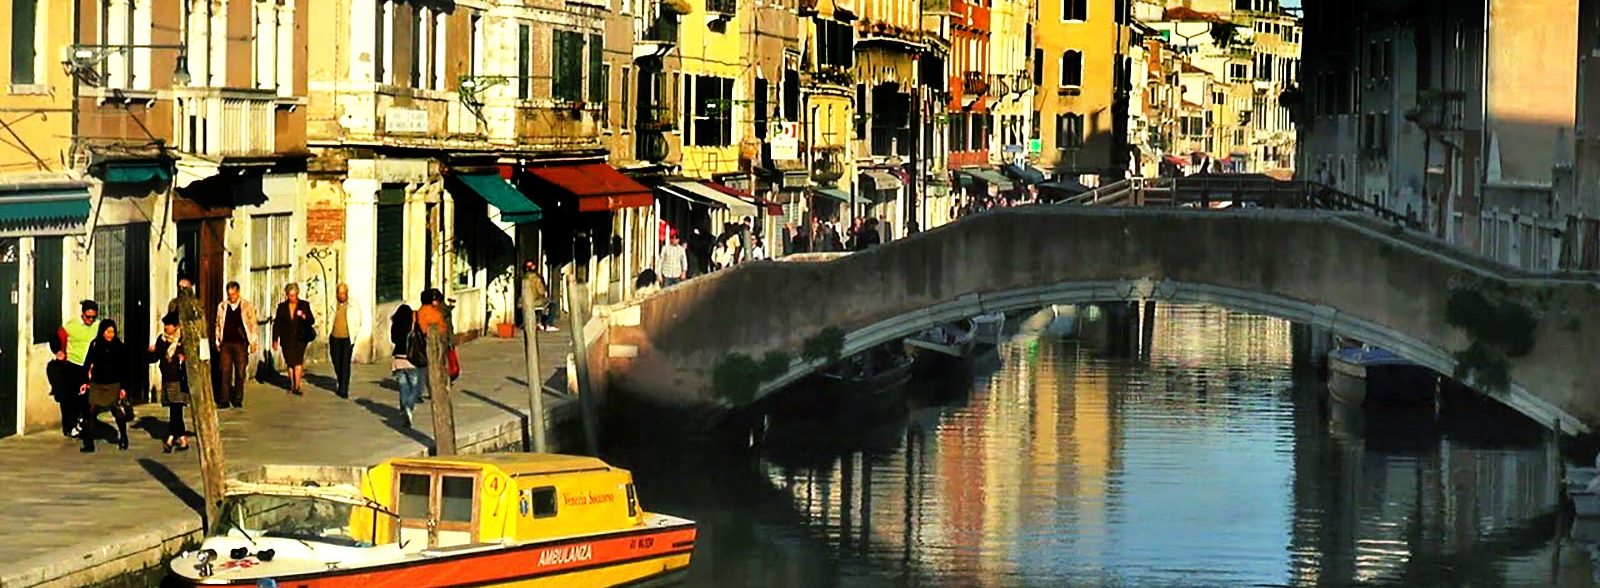 Dove alloggiare a Venezia, le zone migliori